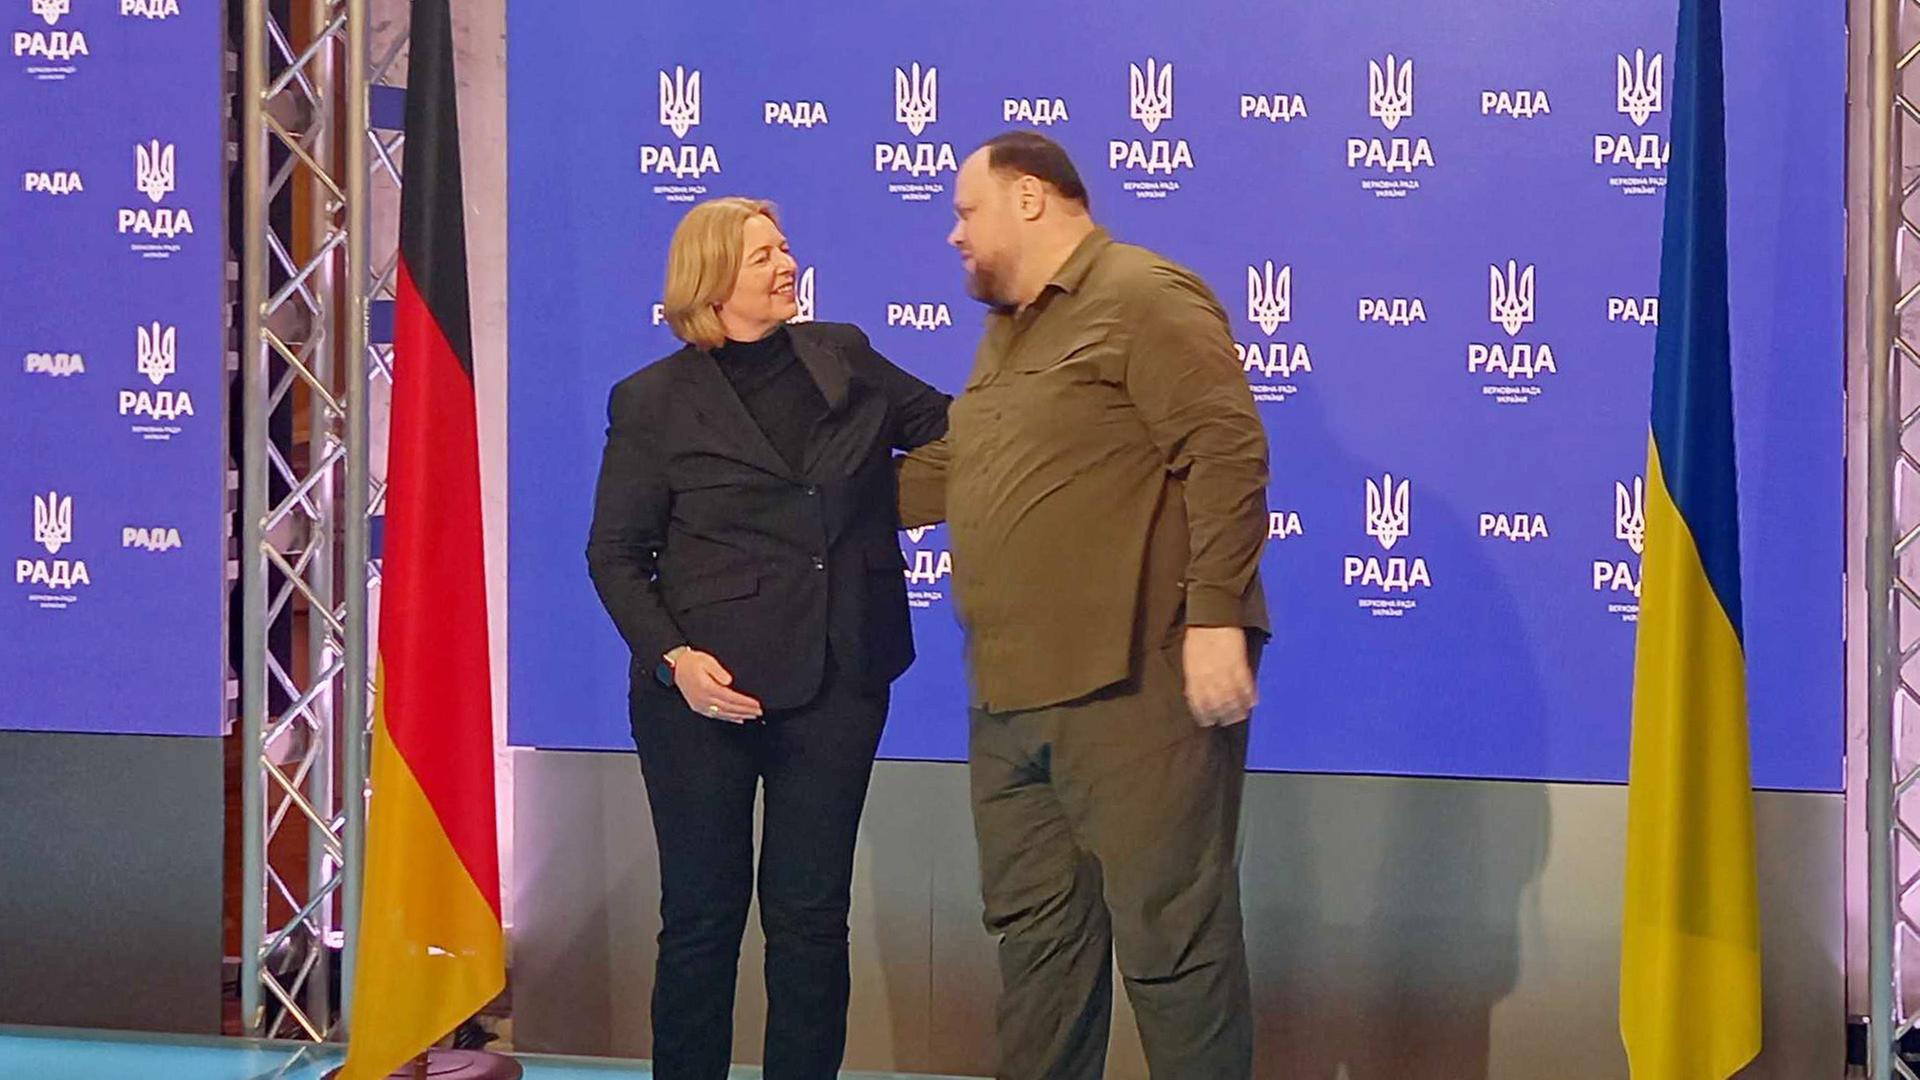 Ruslan Stefanchuk, Präsident des ukrainischen Parlaments,, und Bärbel Bas (SPD), Bundestagspräsidentin, begrüssen sich während ihres Treffens in Kiew.